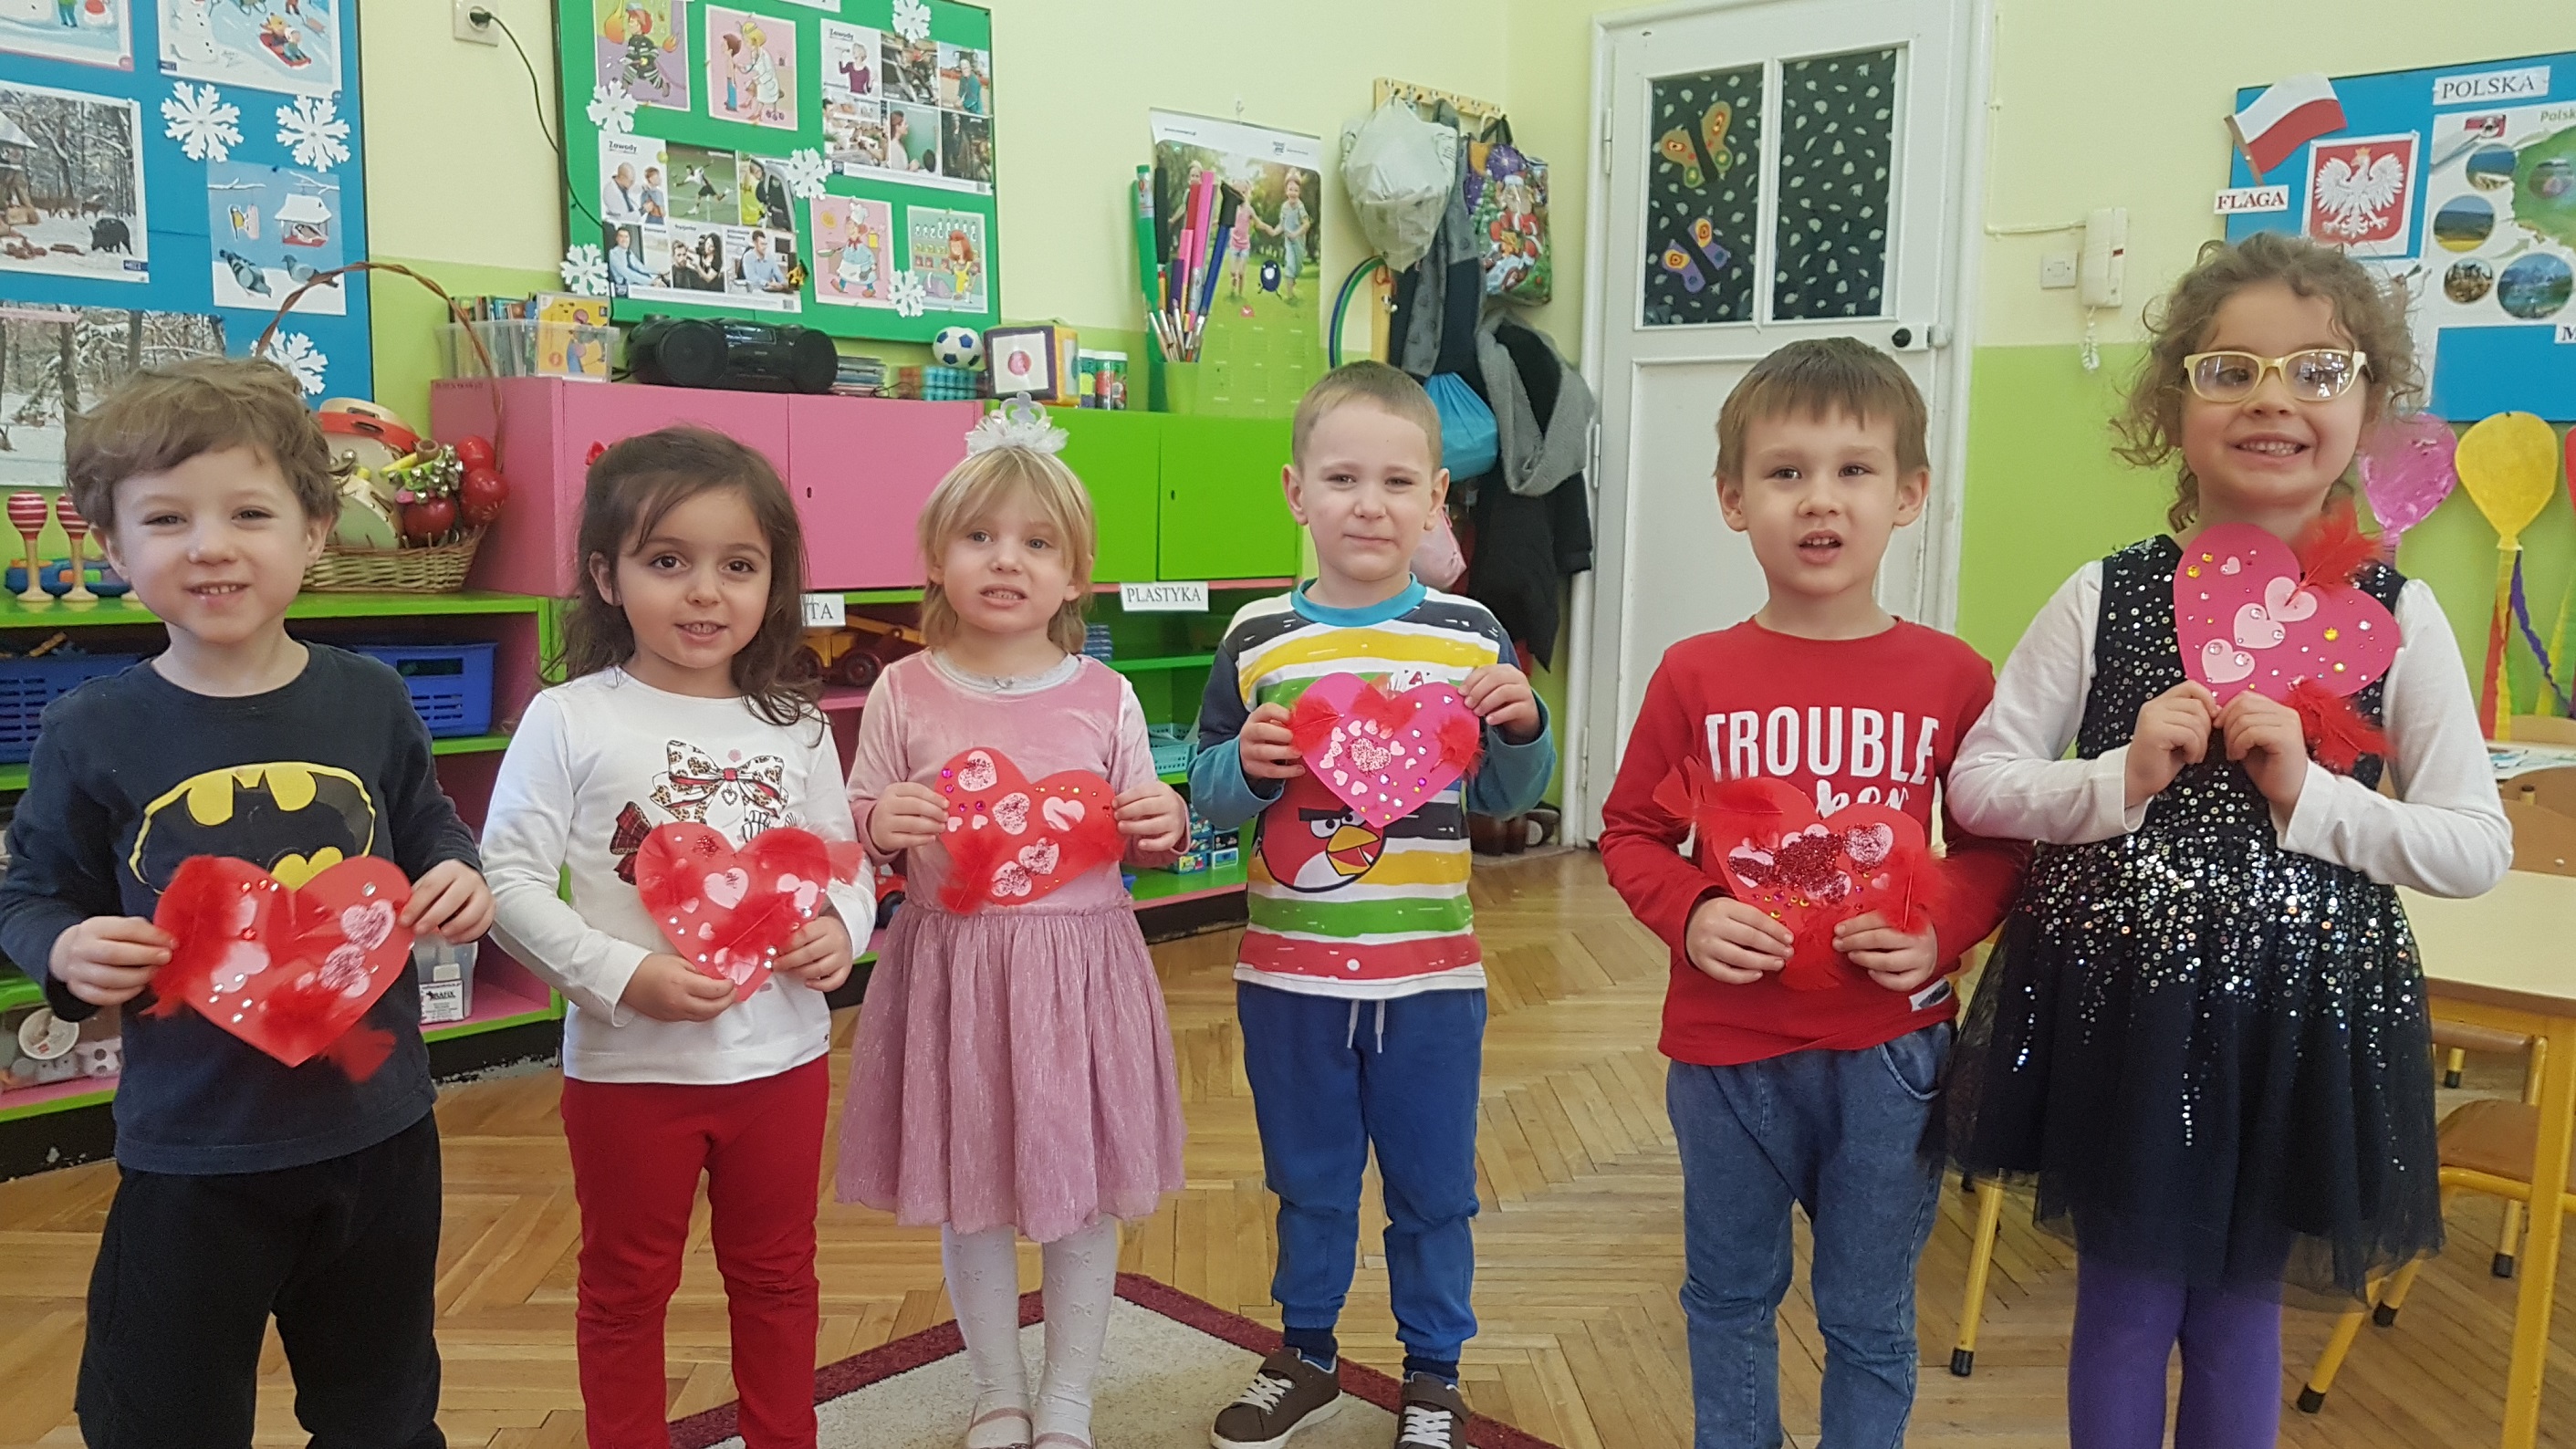 1.Dzieci stoją w szeregu – prezentują wykonane samodzielnie kartki walentynkowe w kształcie serc.